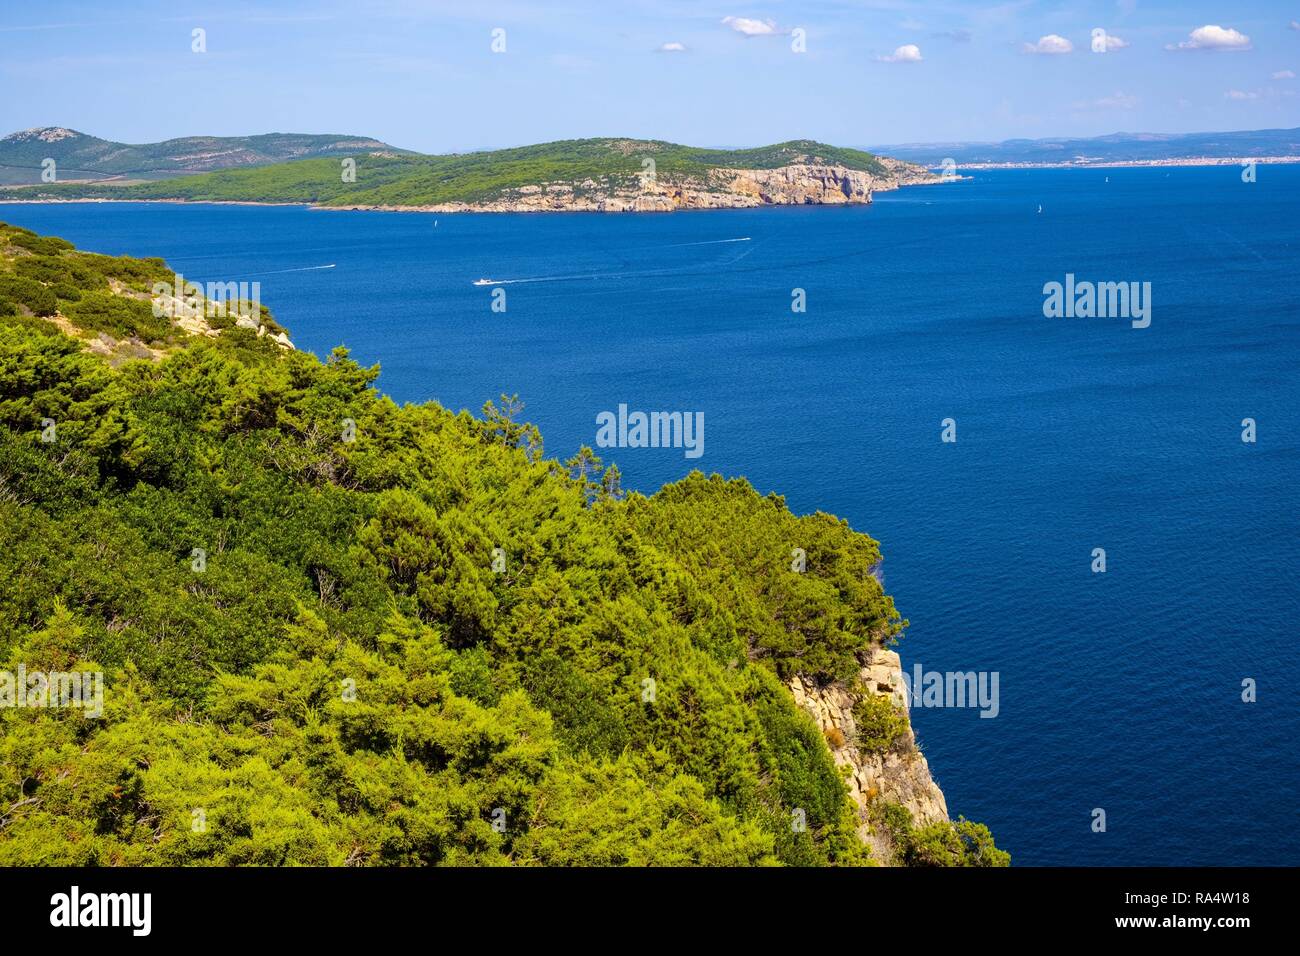 Alghero, Sardinien/Italien - 2018/08/11: Panoramablick auf den Golf von Alghero mit Klippen von Punta del Giglio und Stadt Alghero im Hintergrund Stockfoto